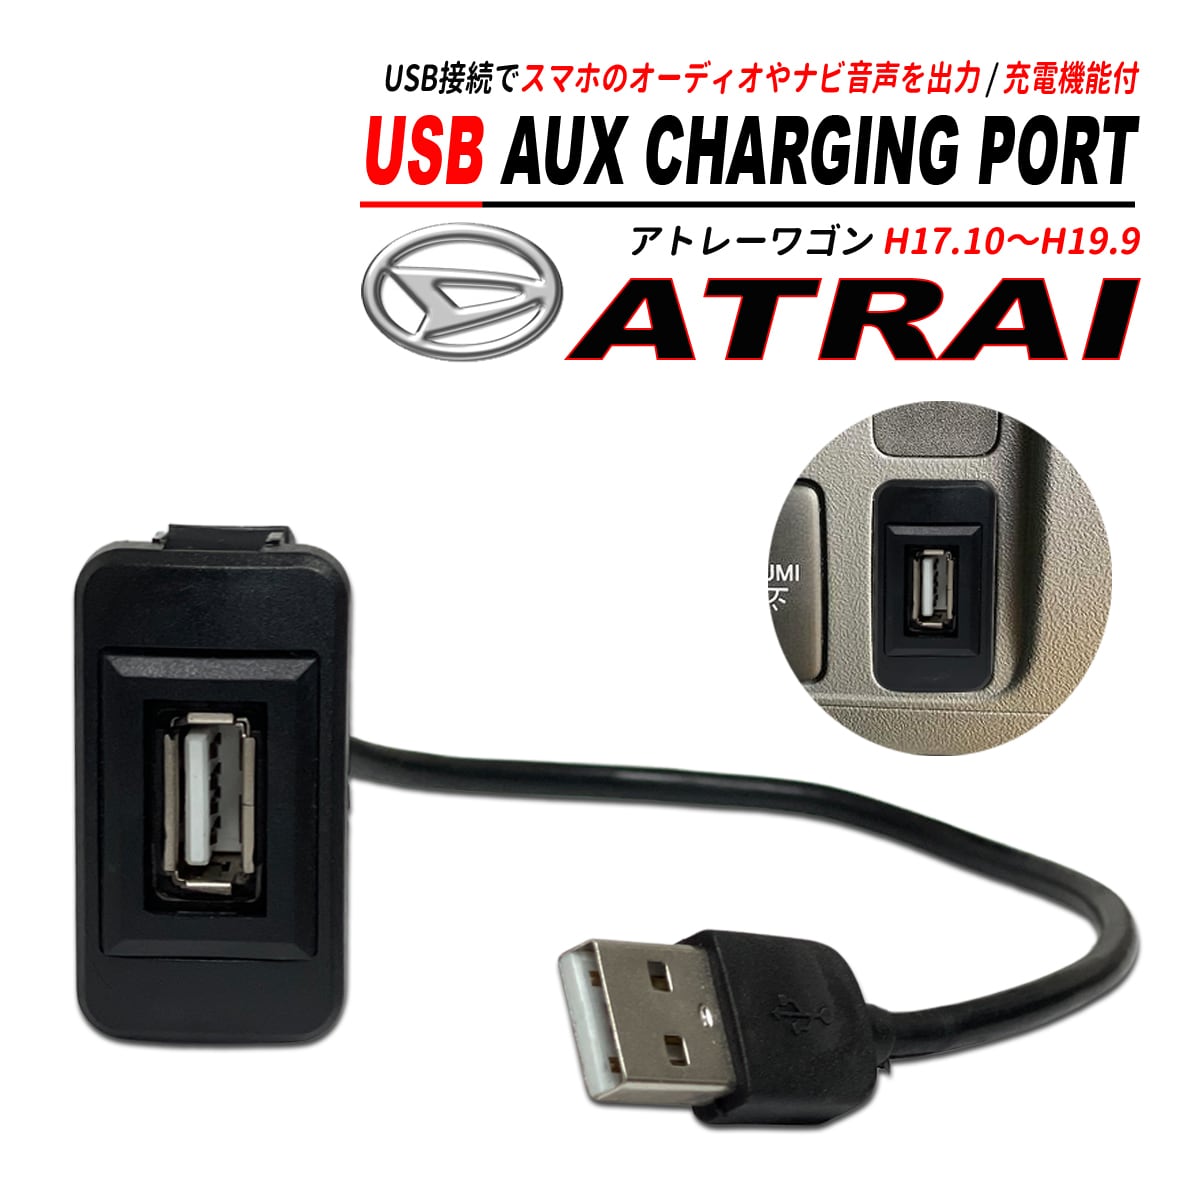 アトレーワゴン S320 330 321 331 USB オーディオ 充電 通信